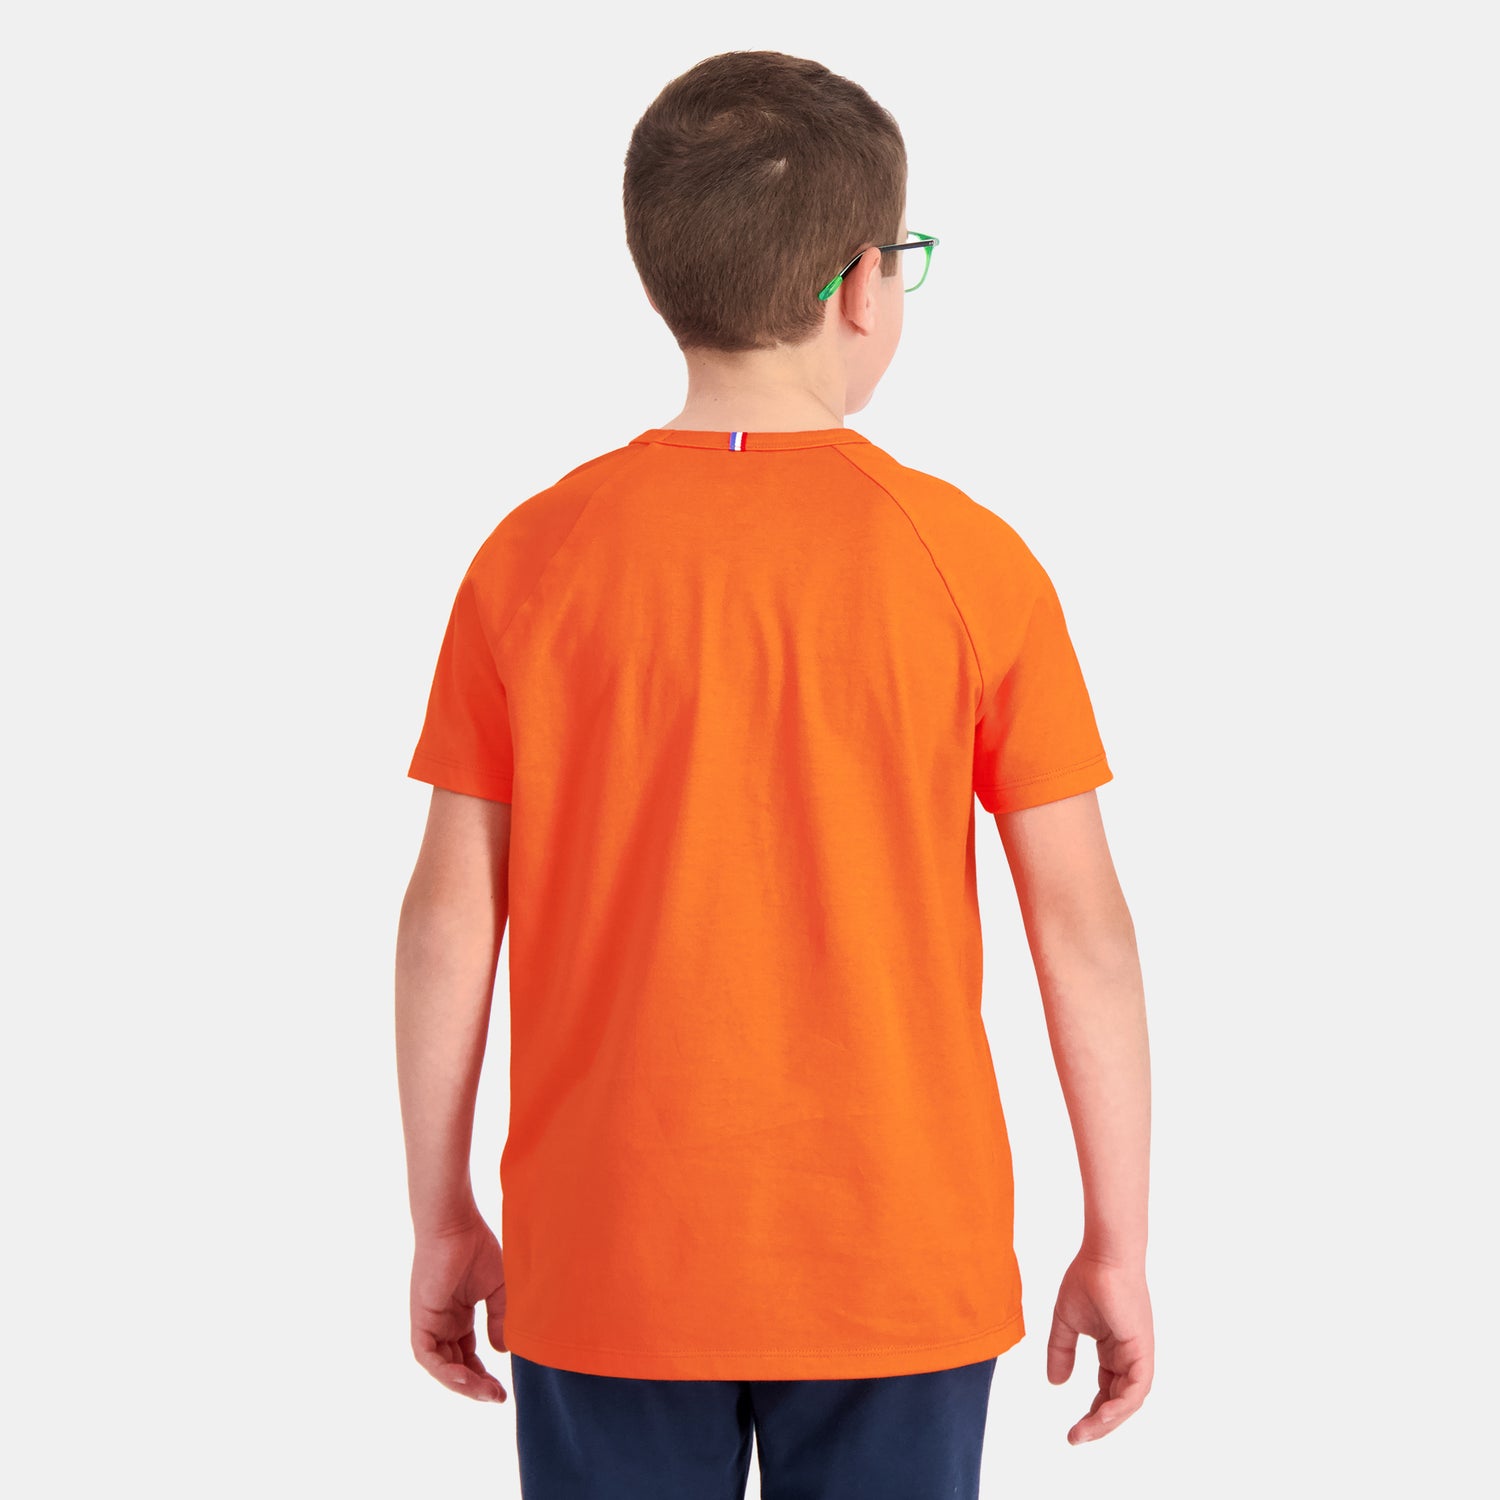 2410127-SAISON 2 Tee SS N°1 Enfant scarlet ibis  | Camiseta para Niño